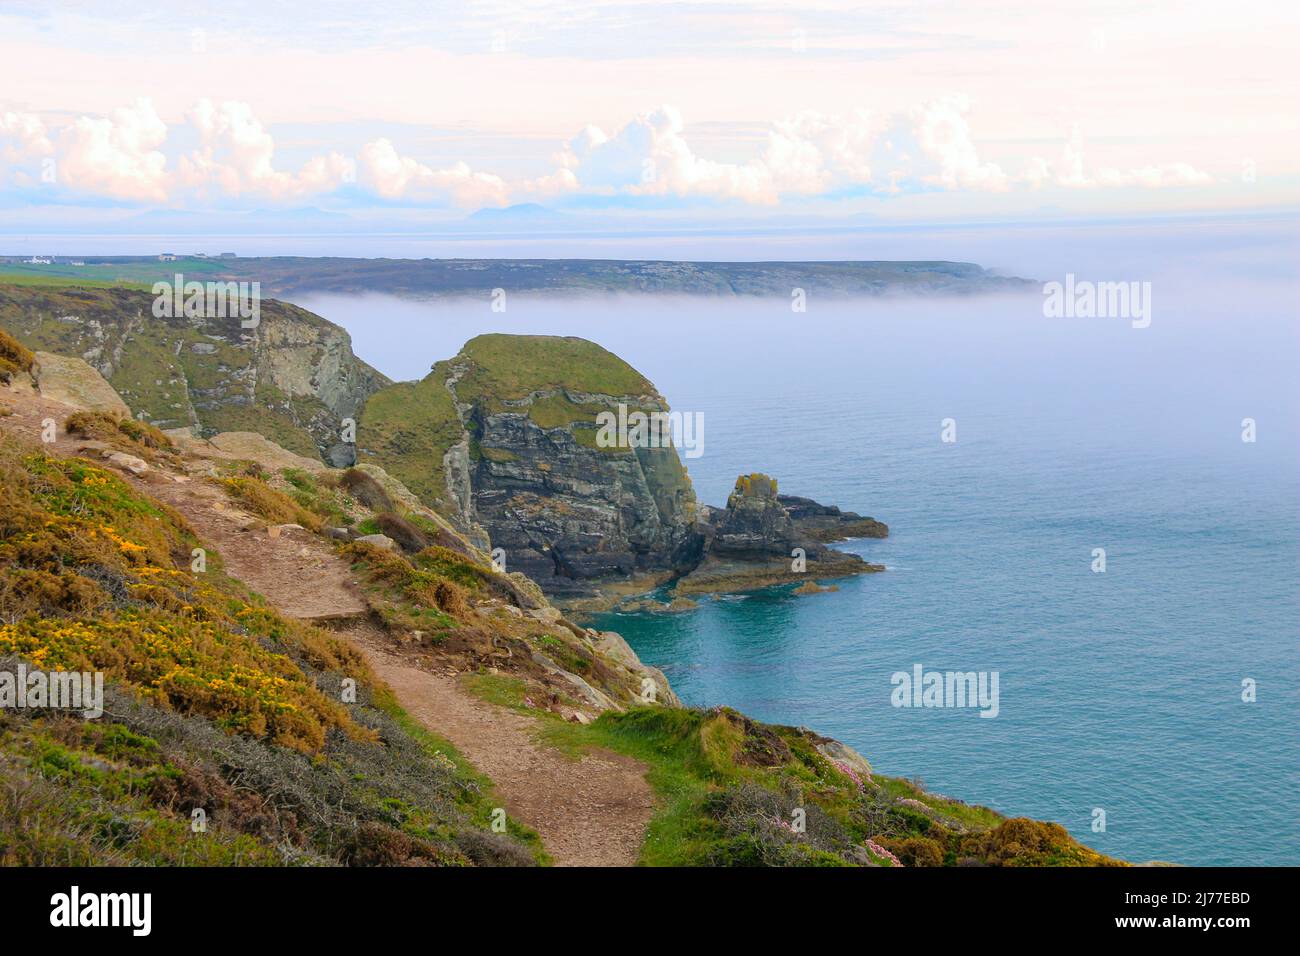 Impresionante paisaje costero con niebla baja del mar / nube, Nr South Stack Lighthouse, Goleudy Ynys Lawd, Holy Island, Anglessey, Gales del Norte Foto de stock